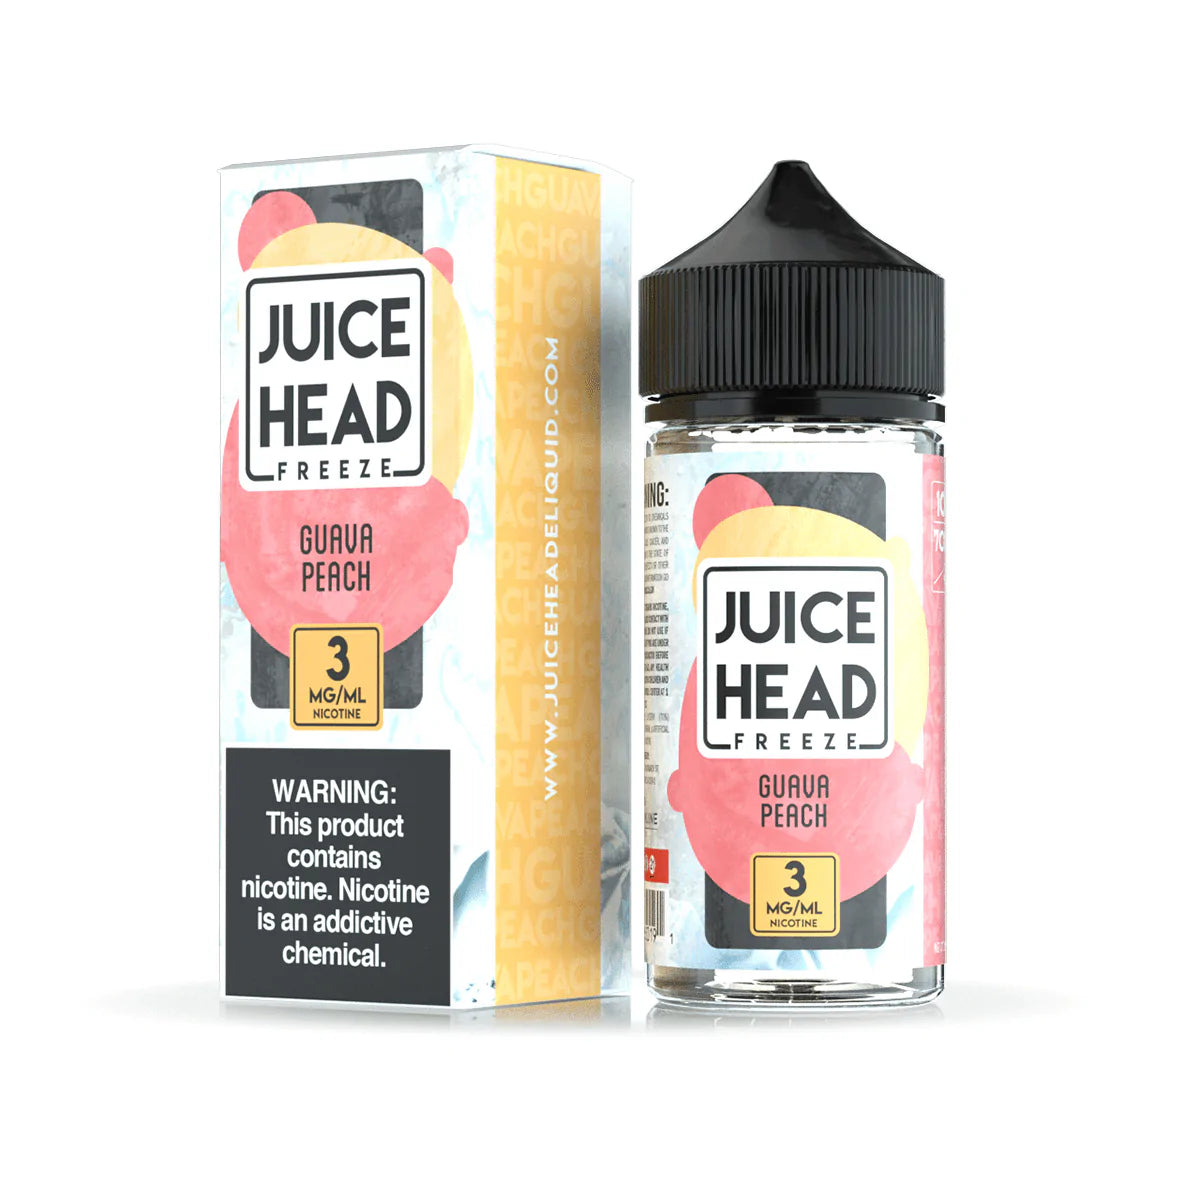 Juice Head Freeze: Guava Peach